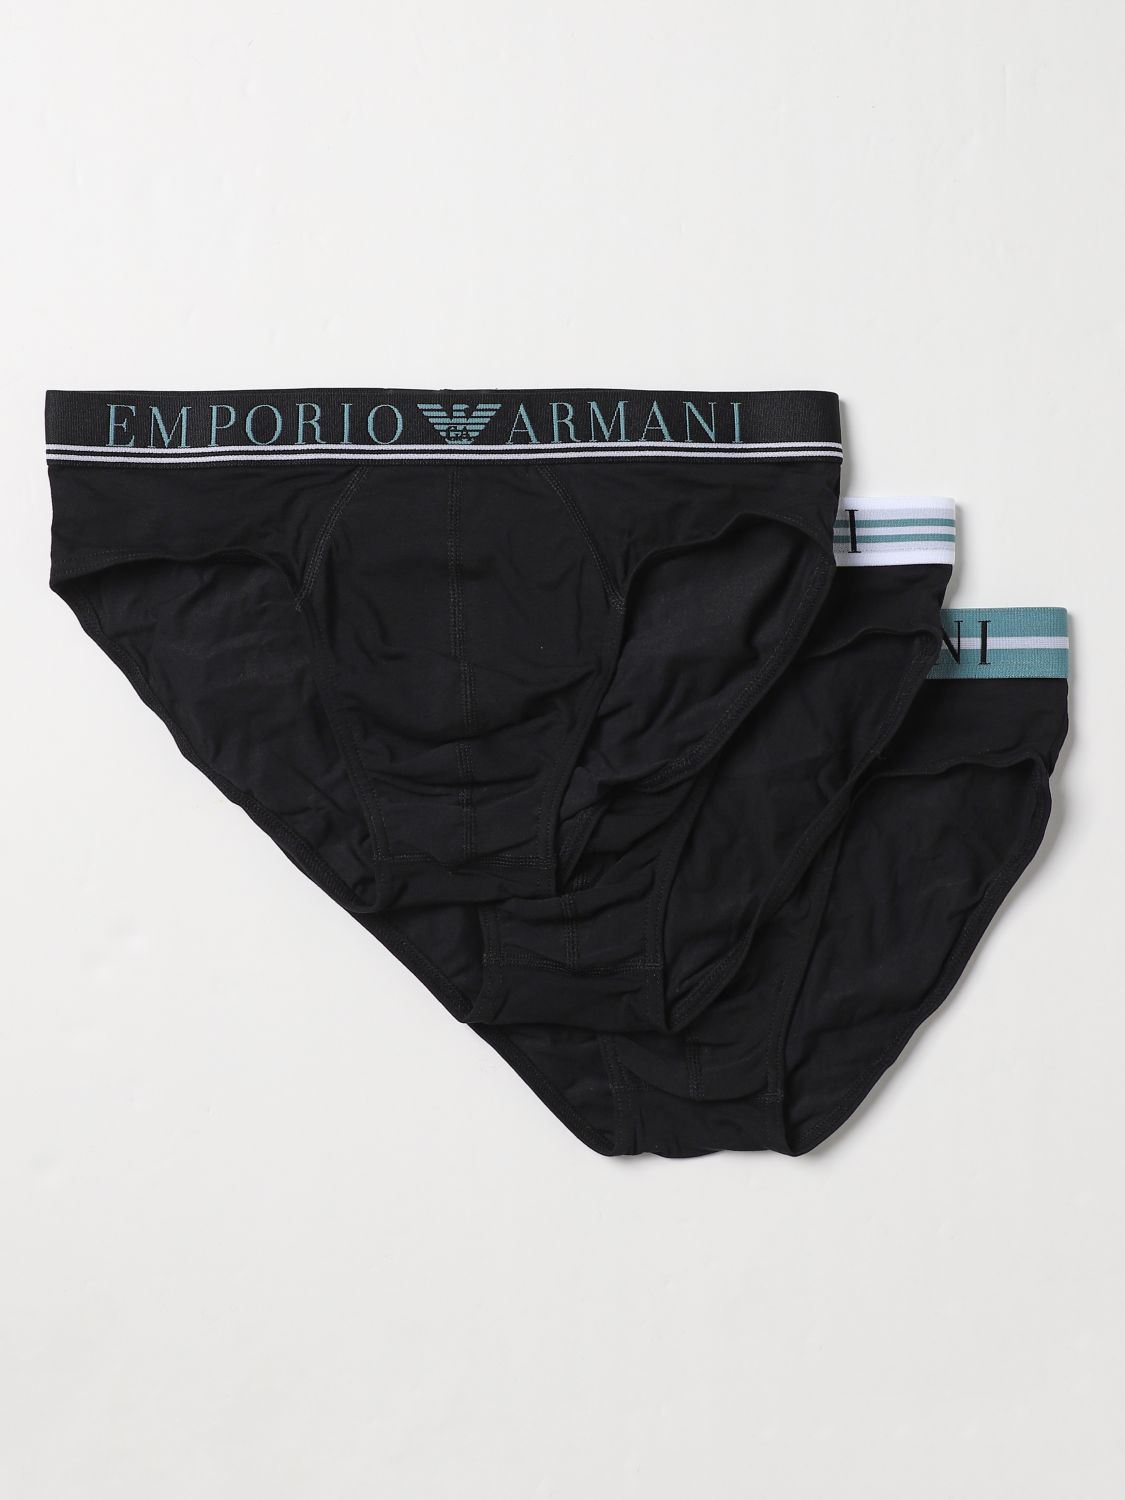 Emporio Armani Underwear Underwear EMPORIO ARMANI UNDERWEAR Men colour Black